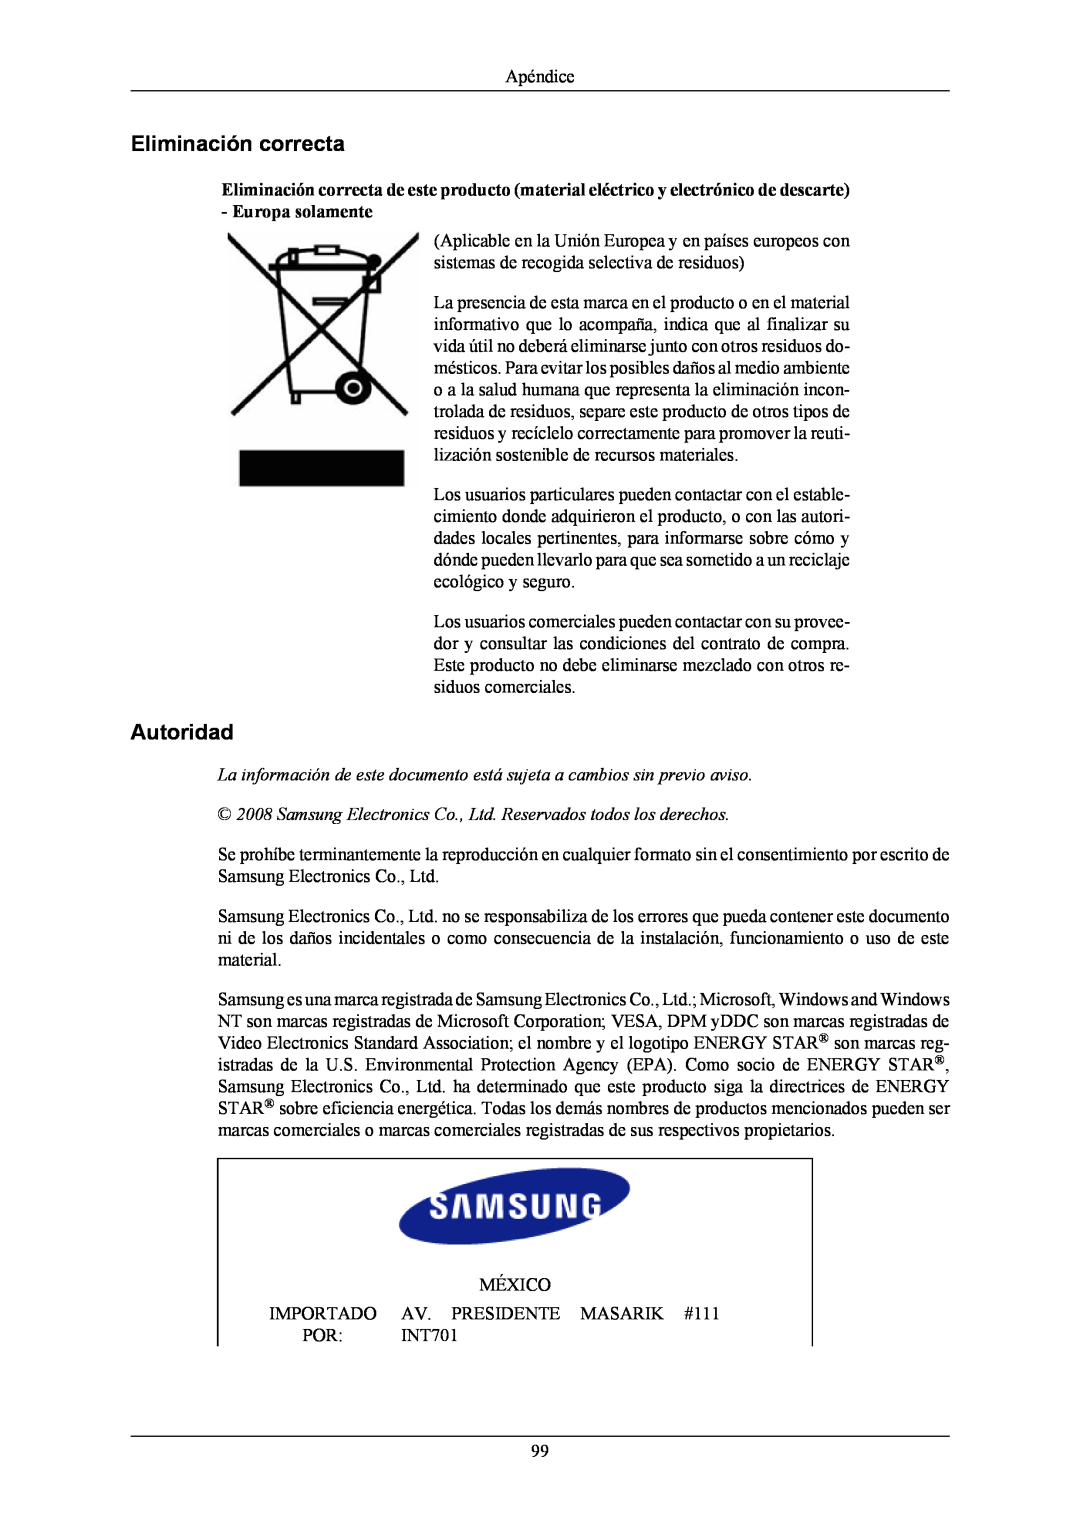 Samsung T190G, T220G, T200G manual Eliminación correcta, Autoridad 